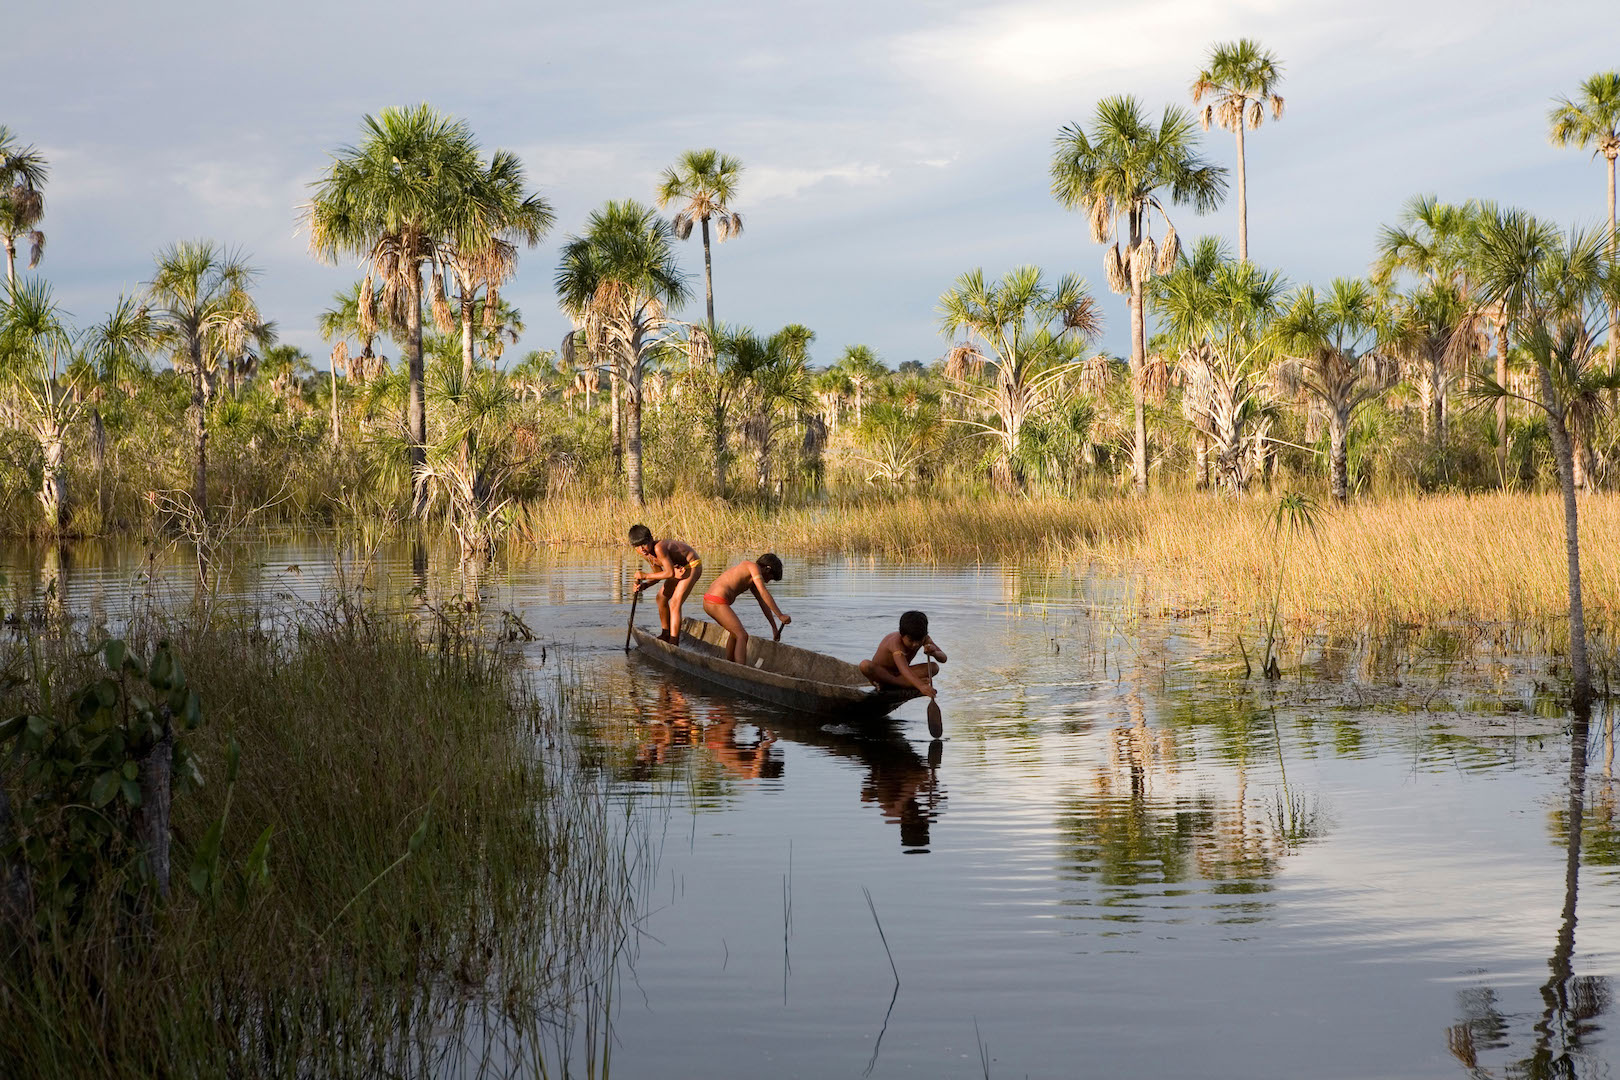 <p>Los pueblos del Xingu dicen que la actividad agrícola más allá de las fronteras de su territorio ha afectado a las poblaciones de peces (imagen: Alamy)</p> <div id="gtx-trans" style="position: absolute; left: -653px; top: -13.7812px;"> <div class="gtx-trans-icon"></div> </div>